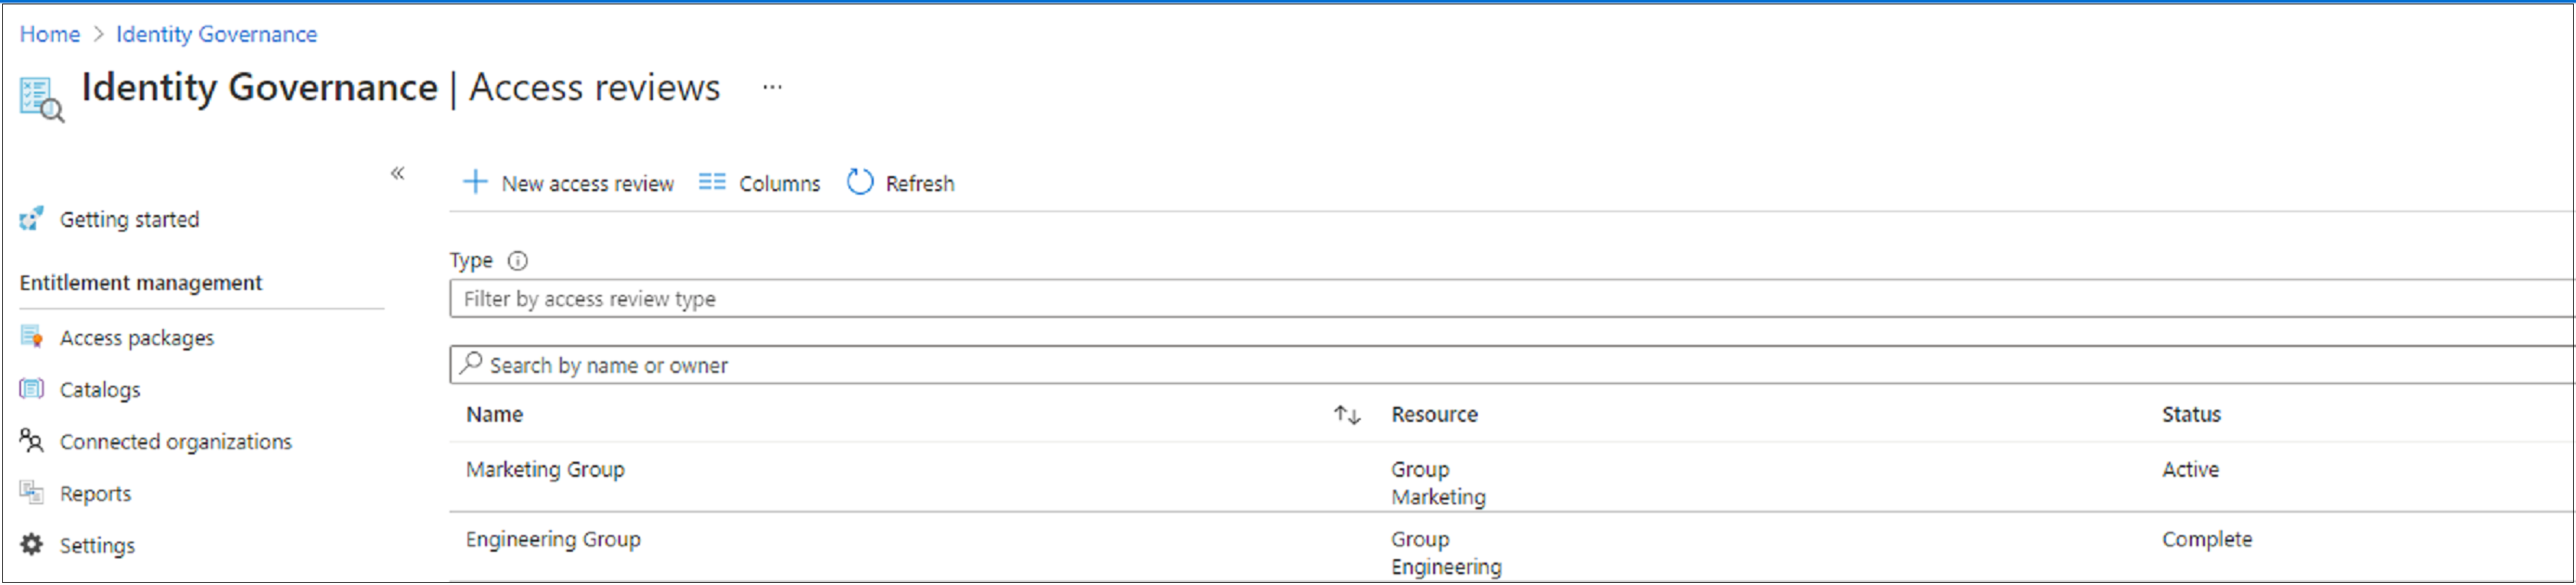 Captura de tela que mostra uma lista de revisões de acesso e seu status.